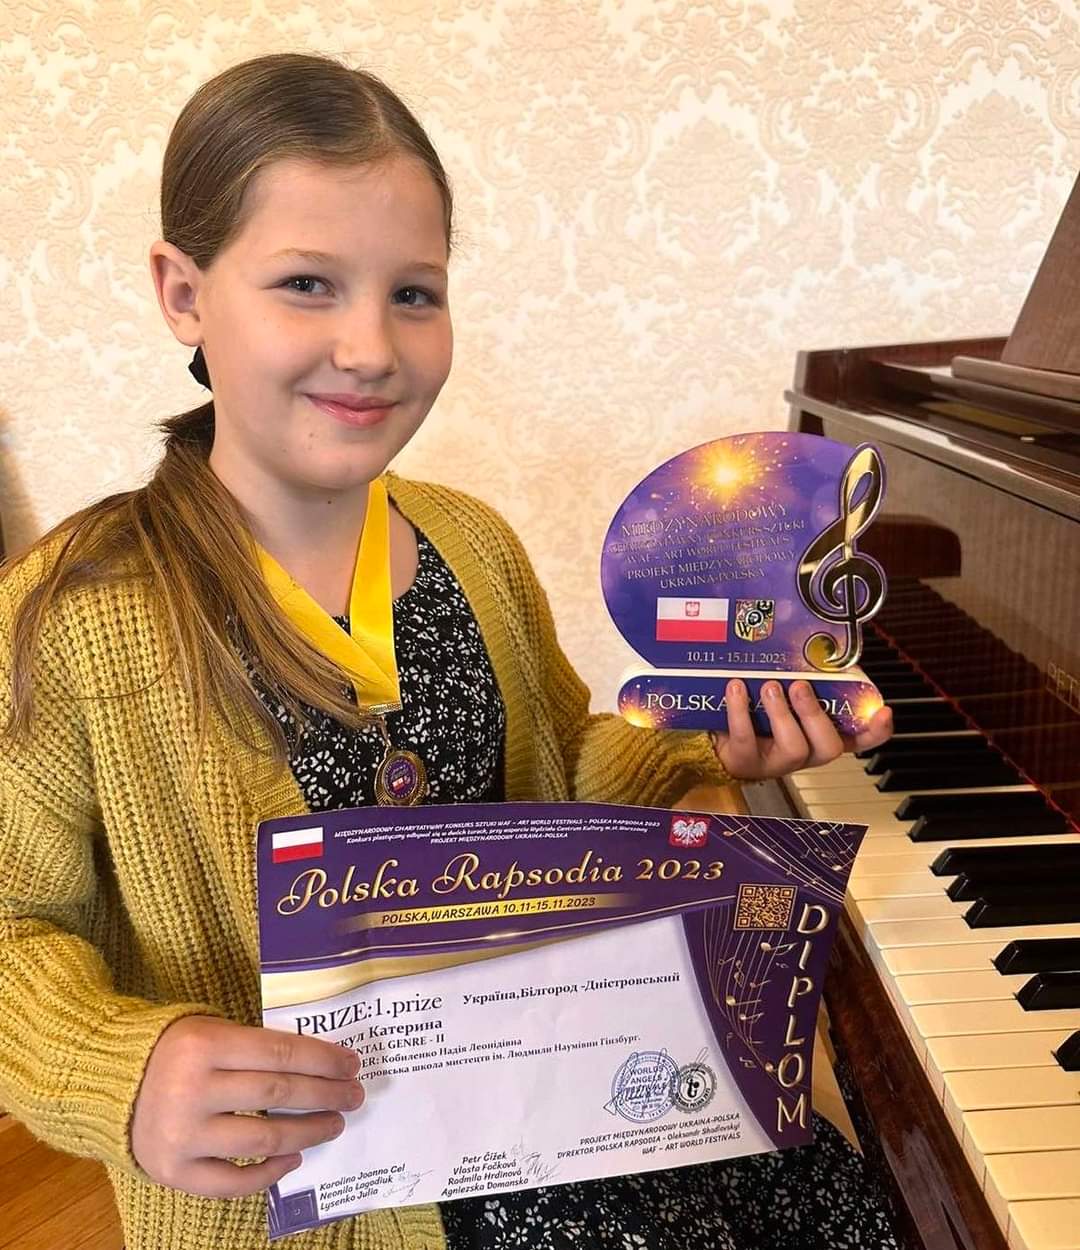 Піаністка з Білгорода-Дністровського завоювала першість на міжнародному конкурсі "Польська рапсодія 2023" у Варшаві